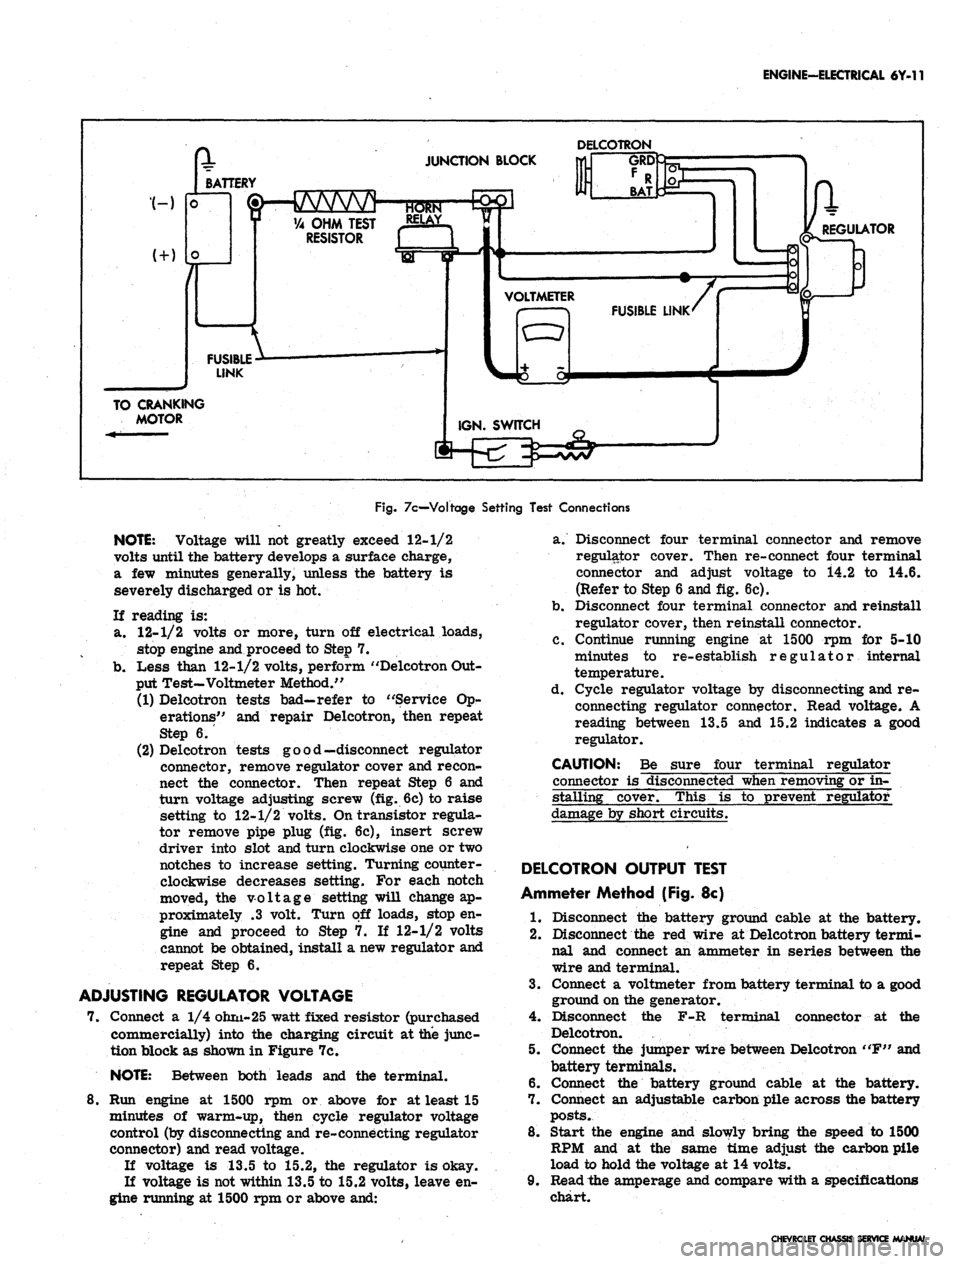 CHEVROLET CAMARO 1967 1.G Chassis Workshop Manual 
ENGINE-ELECTRICAL 6Y-11

I
 BAT 
JUNCTION BLOCK 
DELCOTRON

—GRQ

BATTERY

&HJVVWV

0 VA OHM TEST RELAY >

RESISTOR [ 1 d

FUSIBLE

LINK

TO CRANKING

MOTOR 
Ik

REGULATOR

VOLTMETER

FUSIBLE LINK
